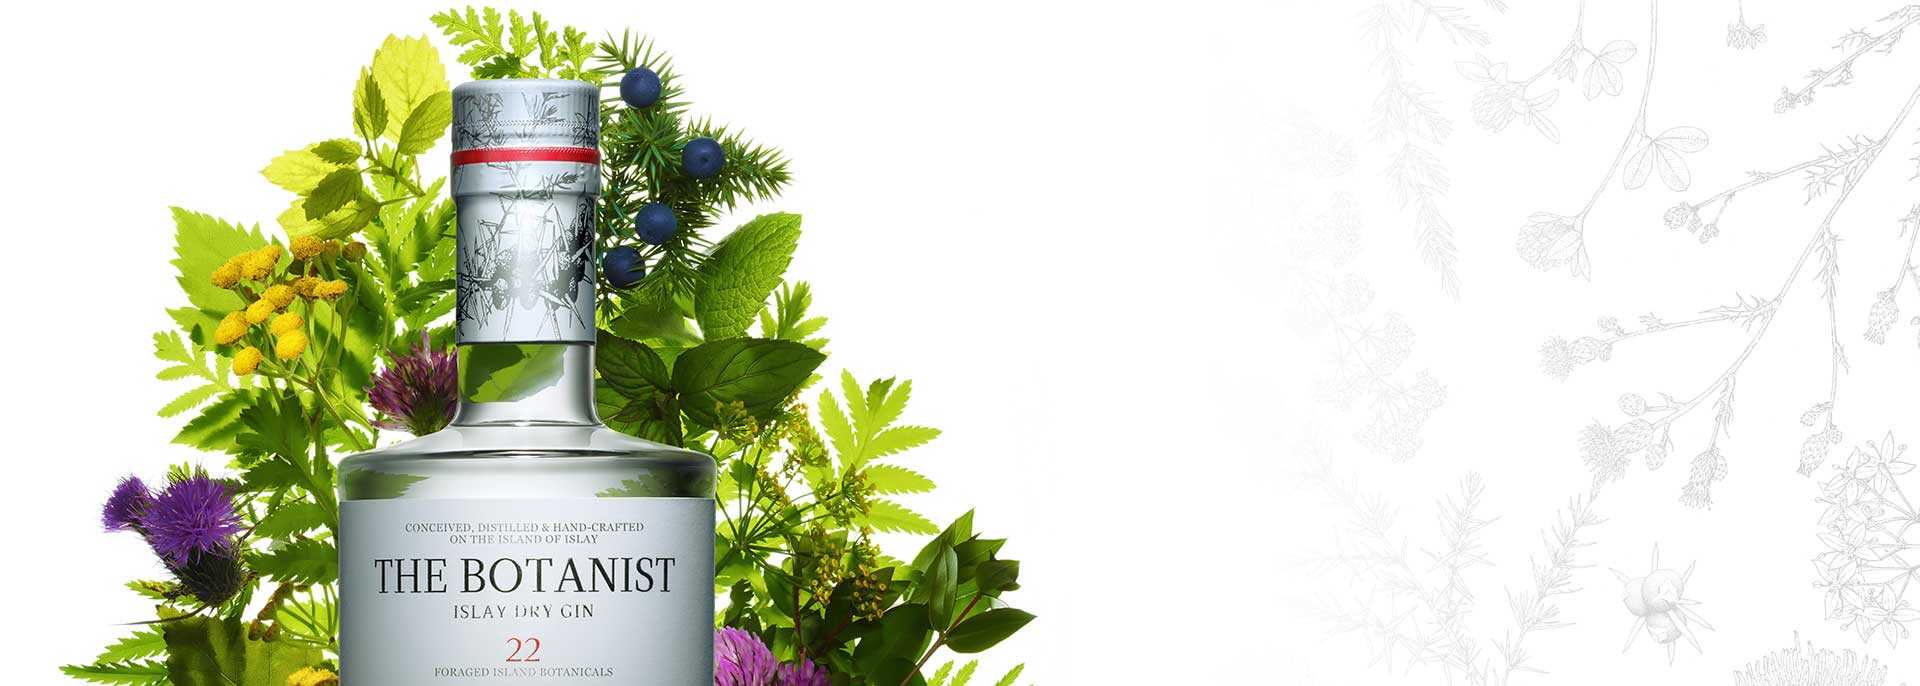 The Botanist - wielowymiarowy gin z wyspy Islay w ofercie